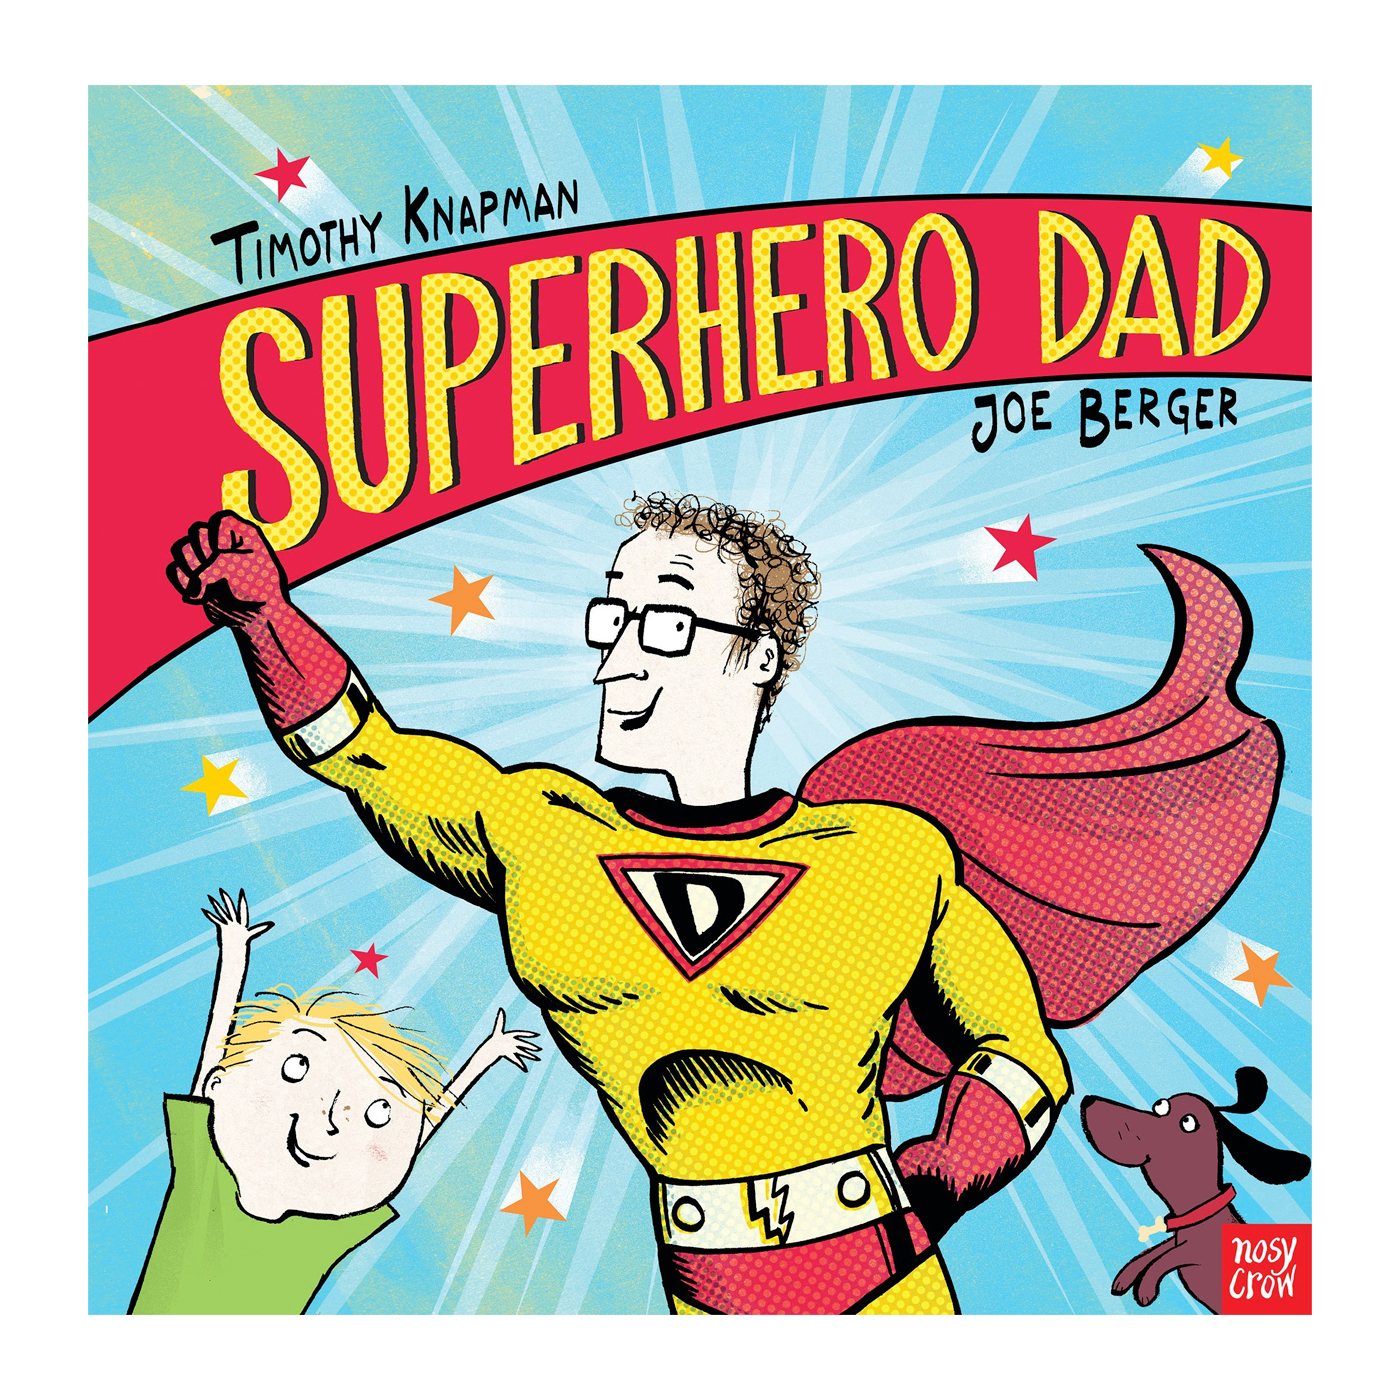  Superhero Dad